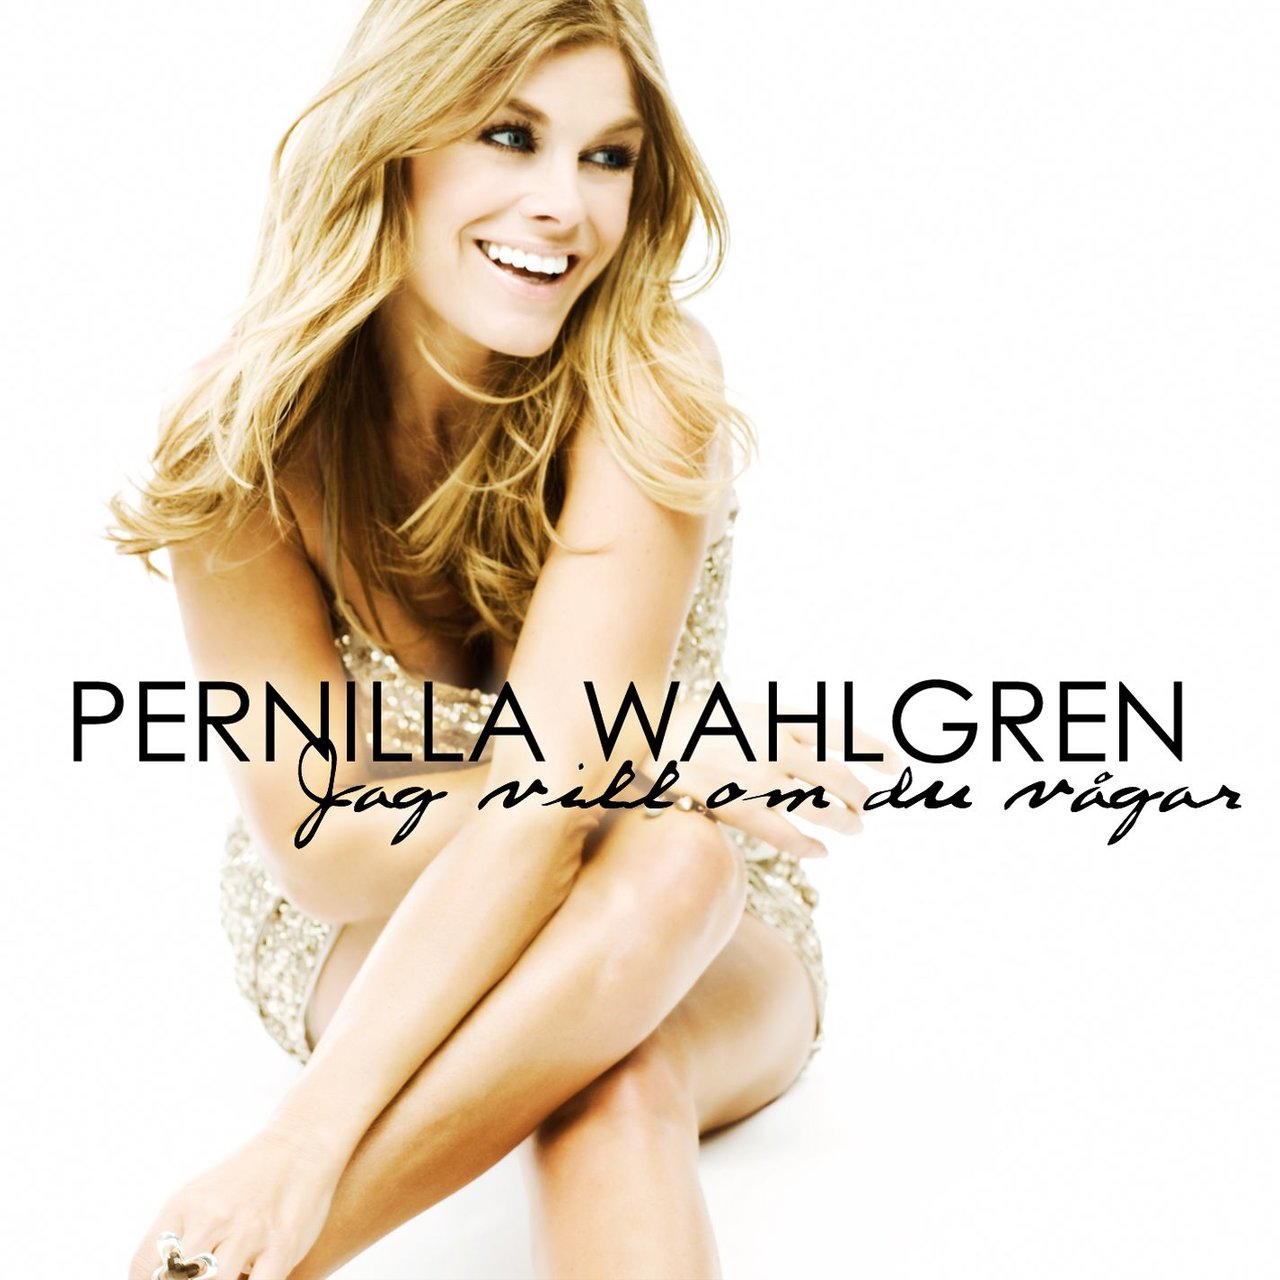 Pernilla Wahlgren — Jag vill om du vågar cover artwork